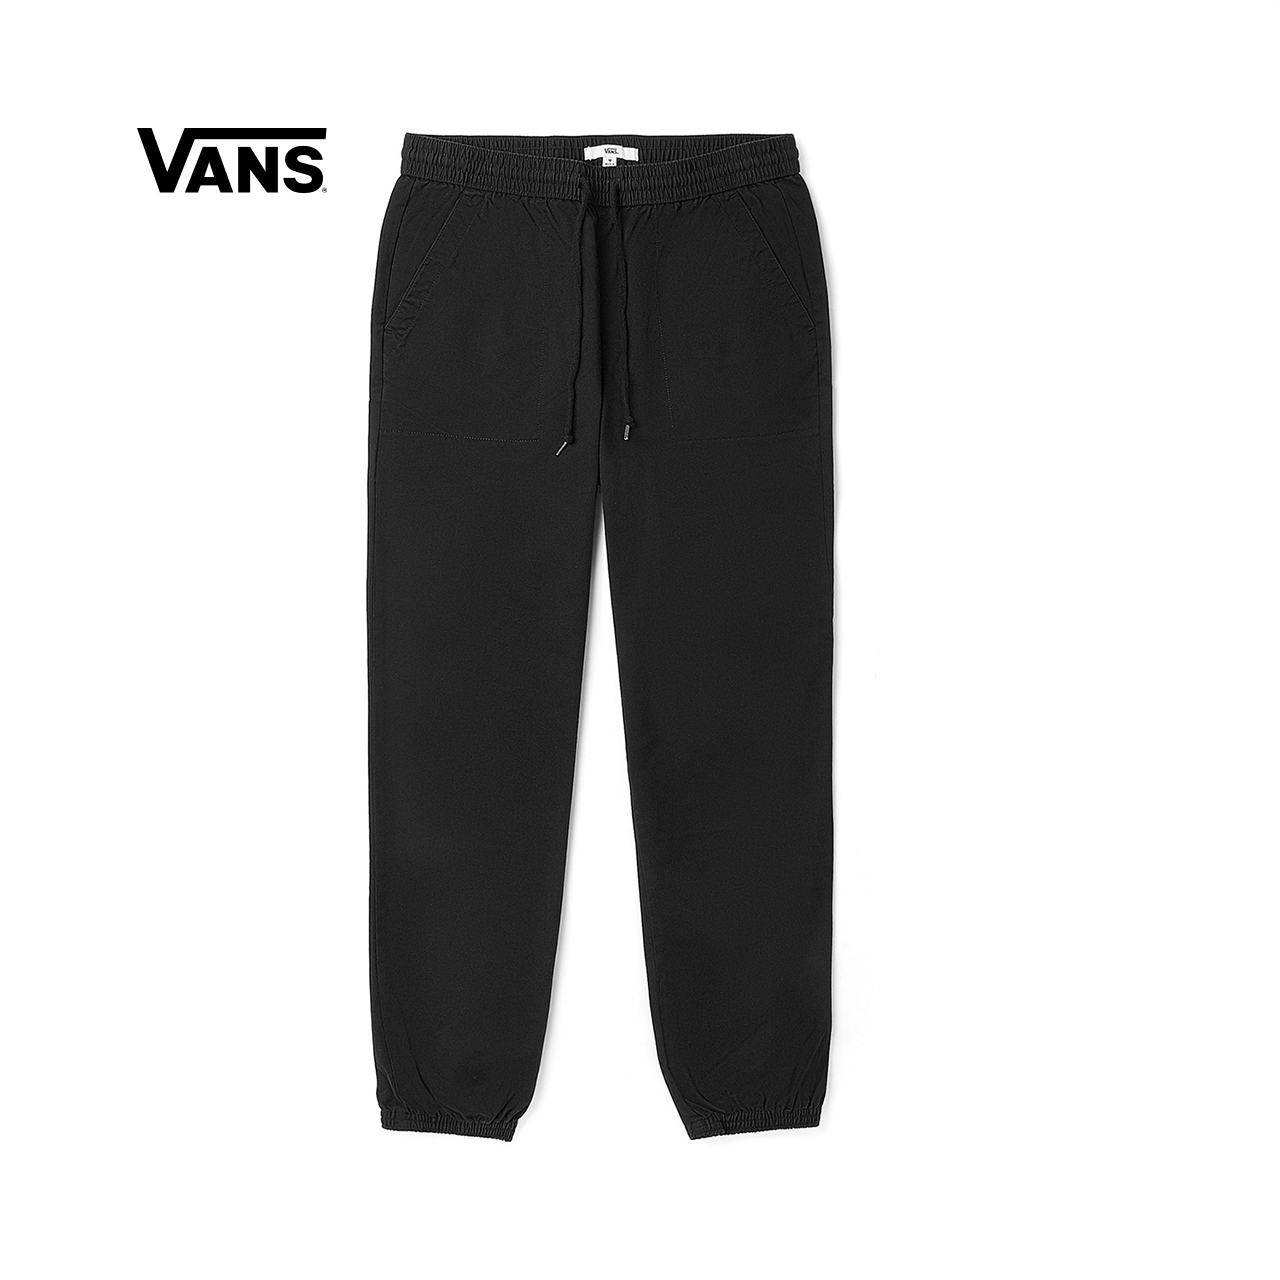 Vans范斯 女子梭织长裤 运动休闲新款官方正品